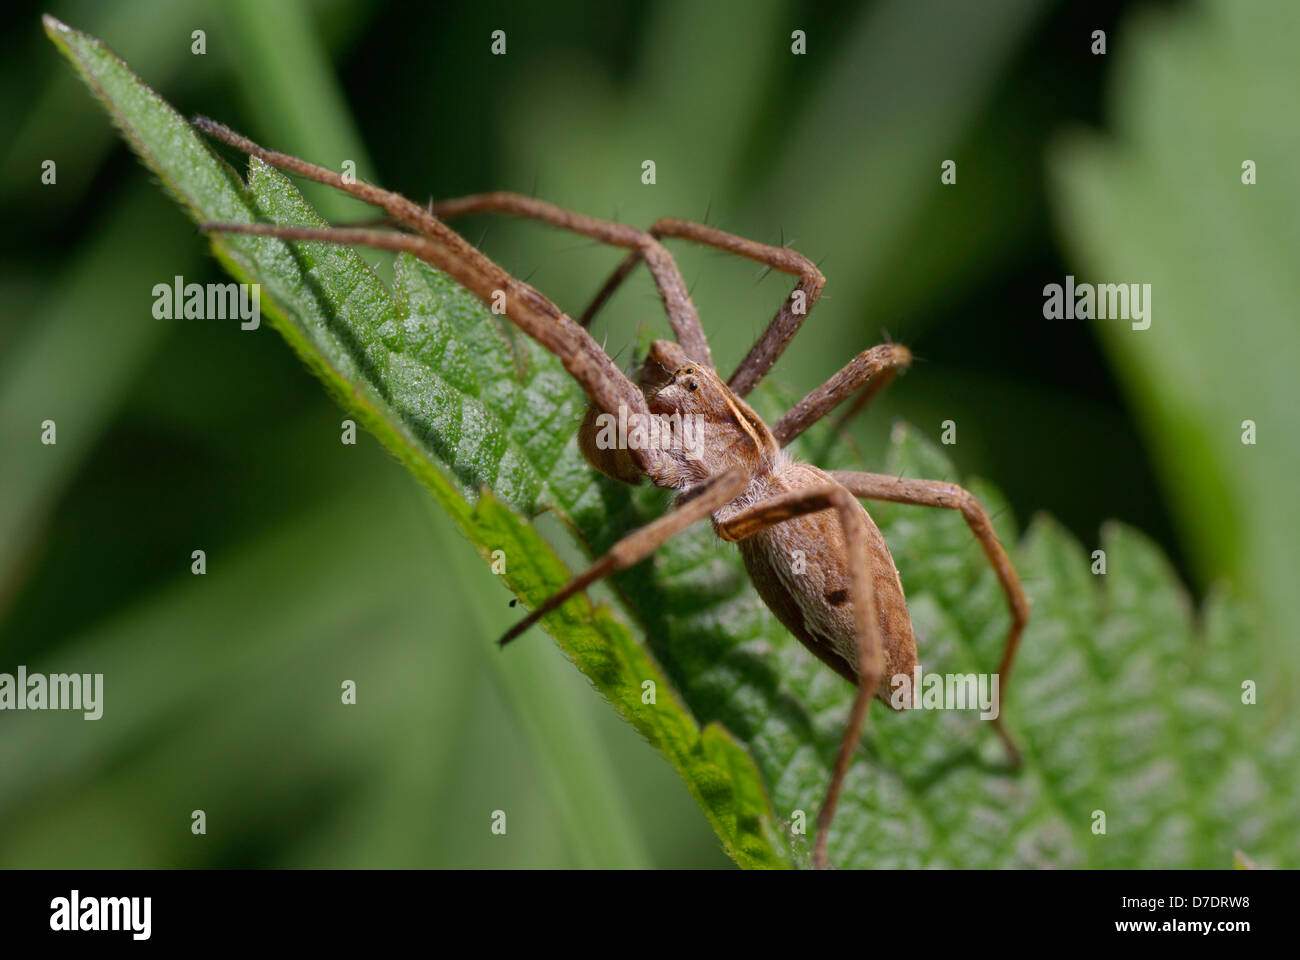 Grosse araignée effrayante sur vert feuille d'ortie Banque D'Images